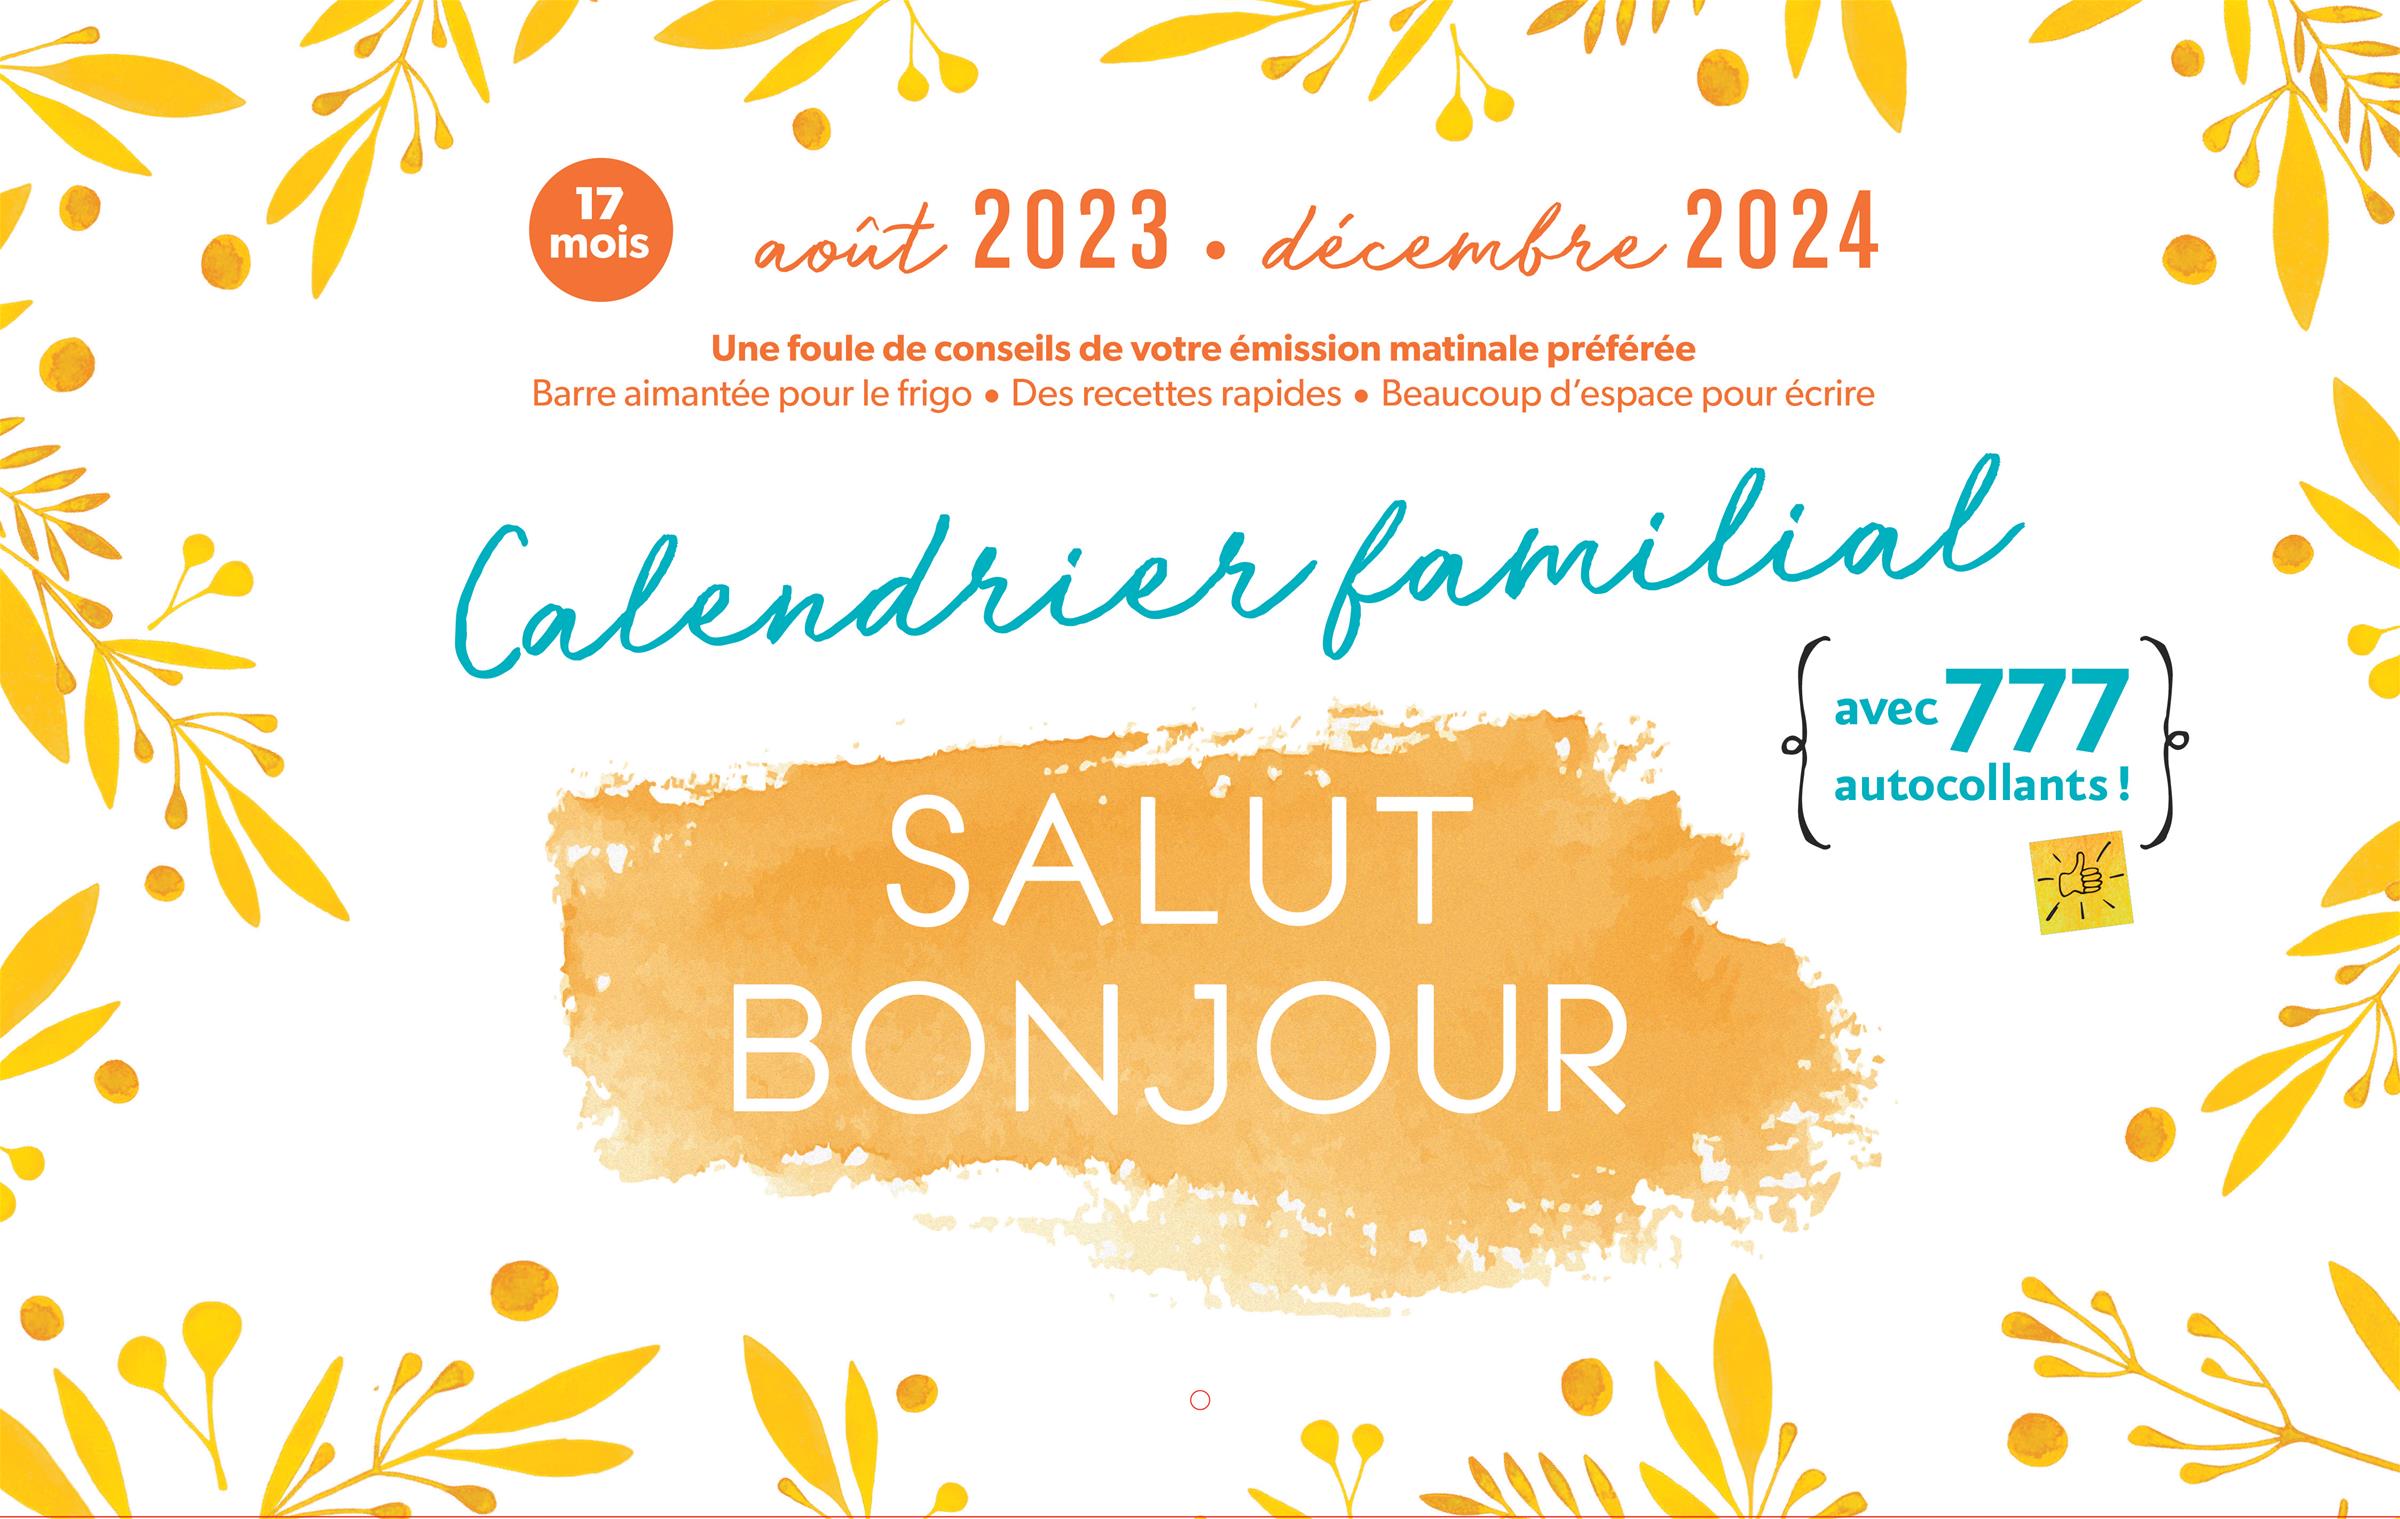 Calendrier familial Salut Bonjour 2023-2024 – Les Éditions de l'Homme